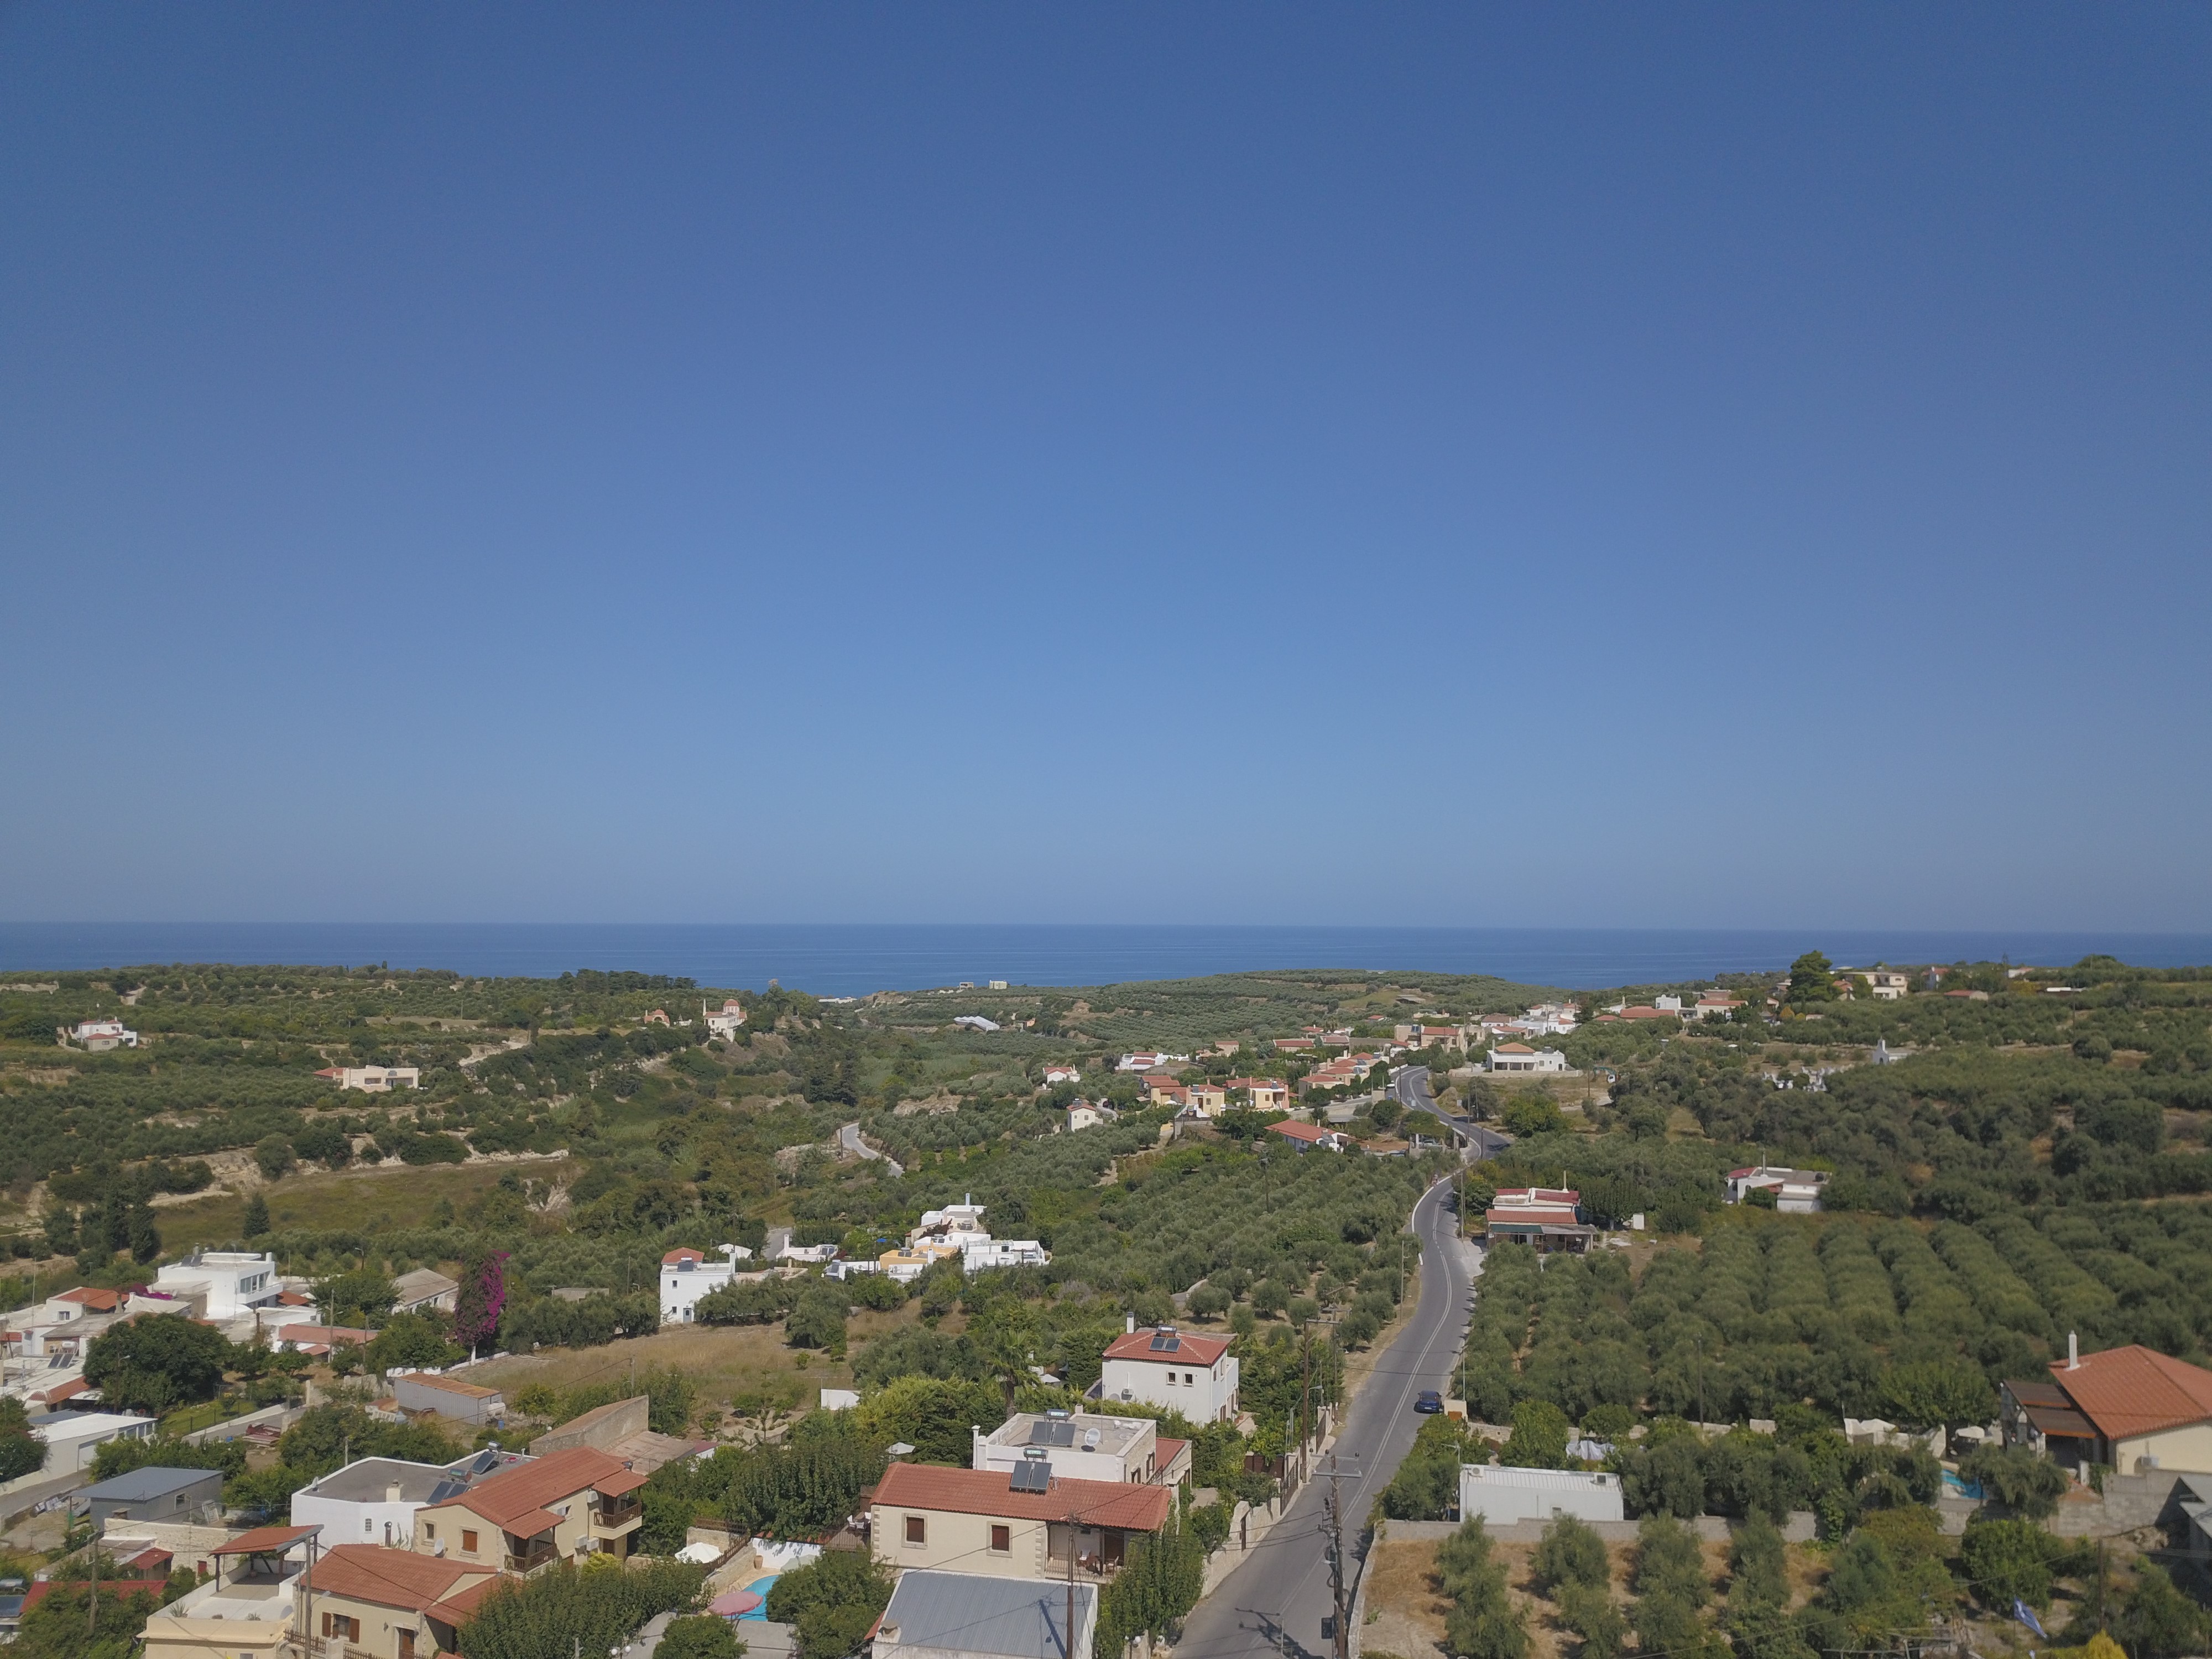 Villages of Rethymnon: Asteri Village